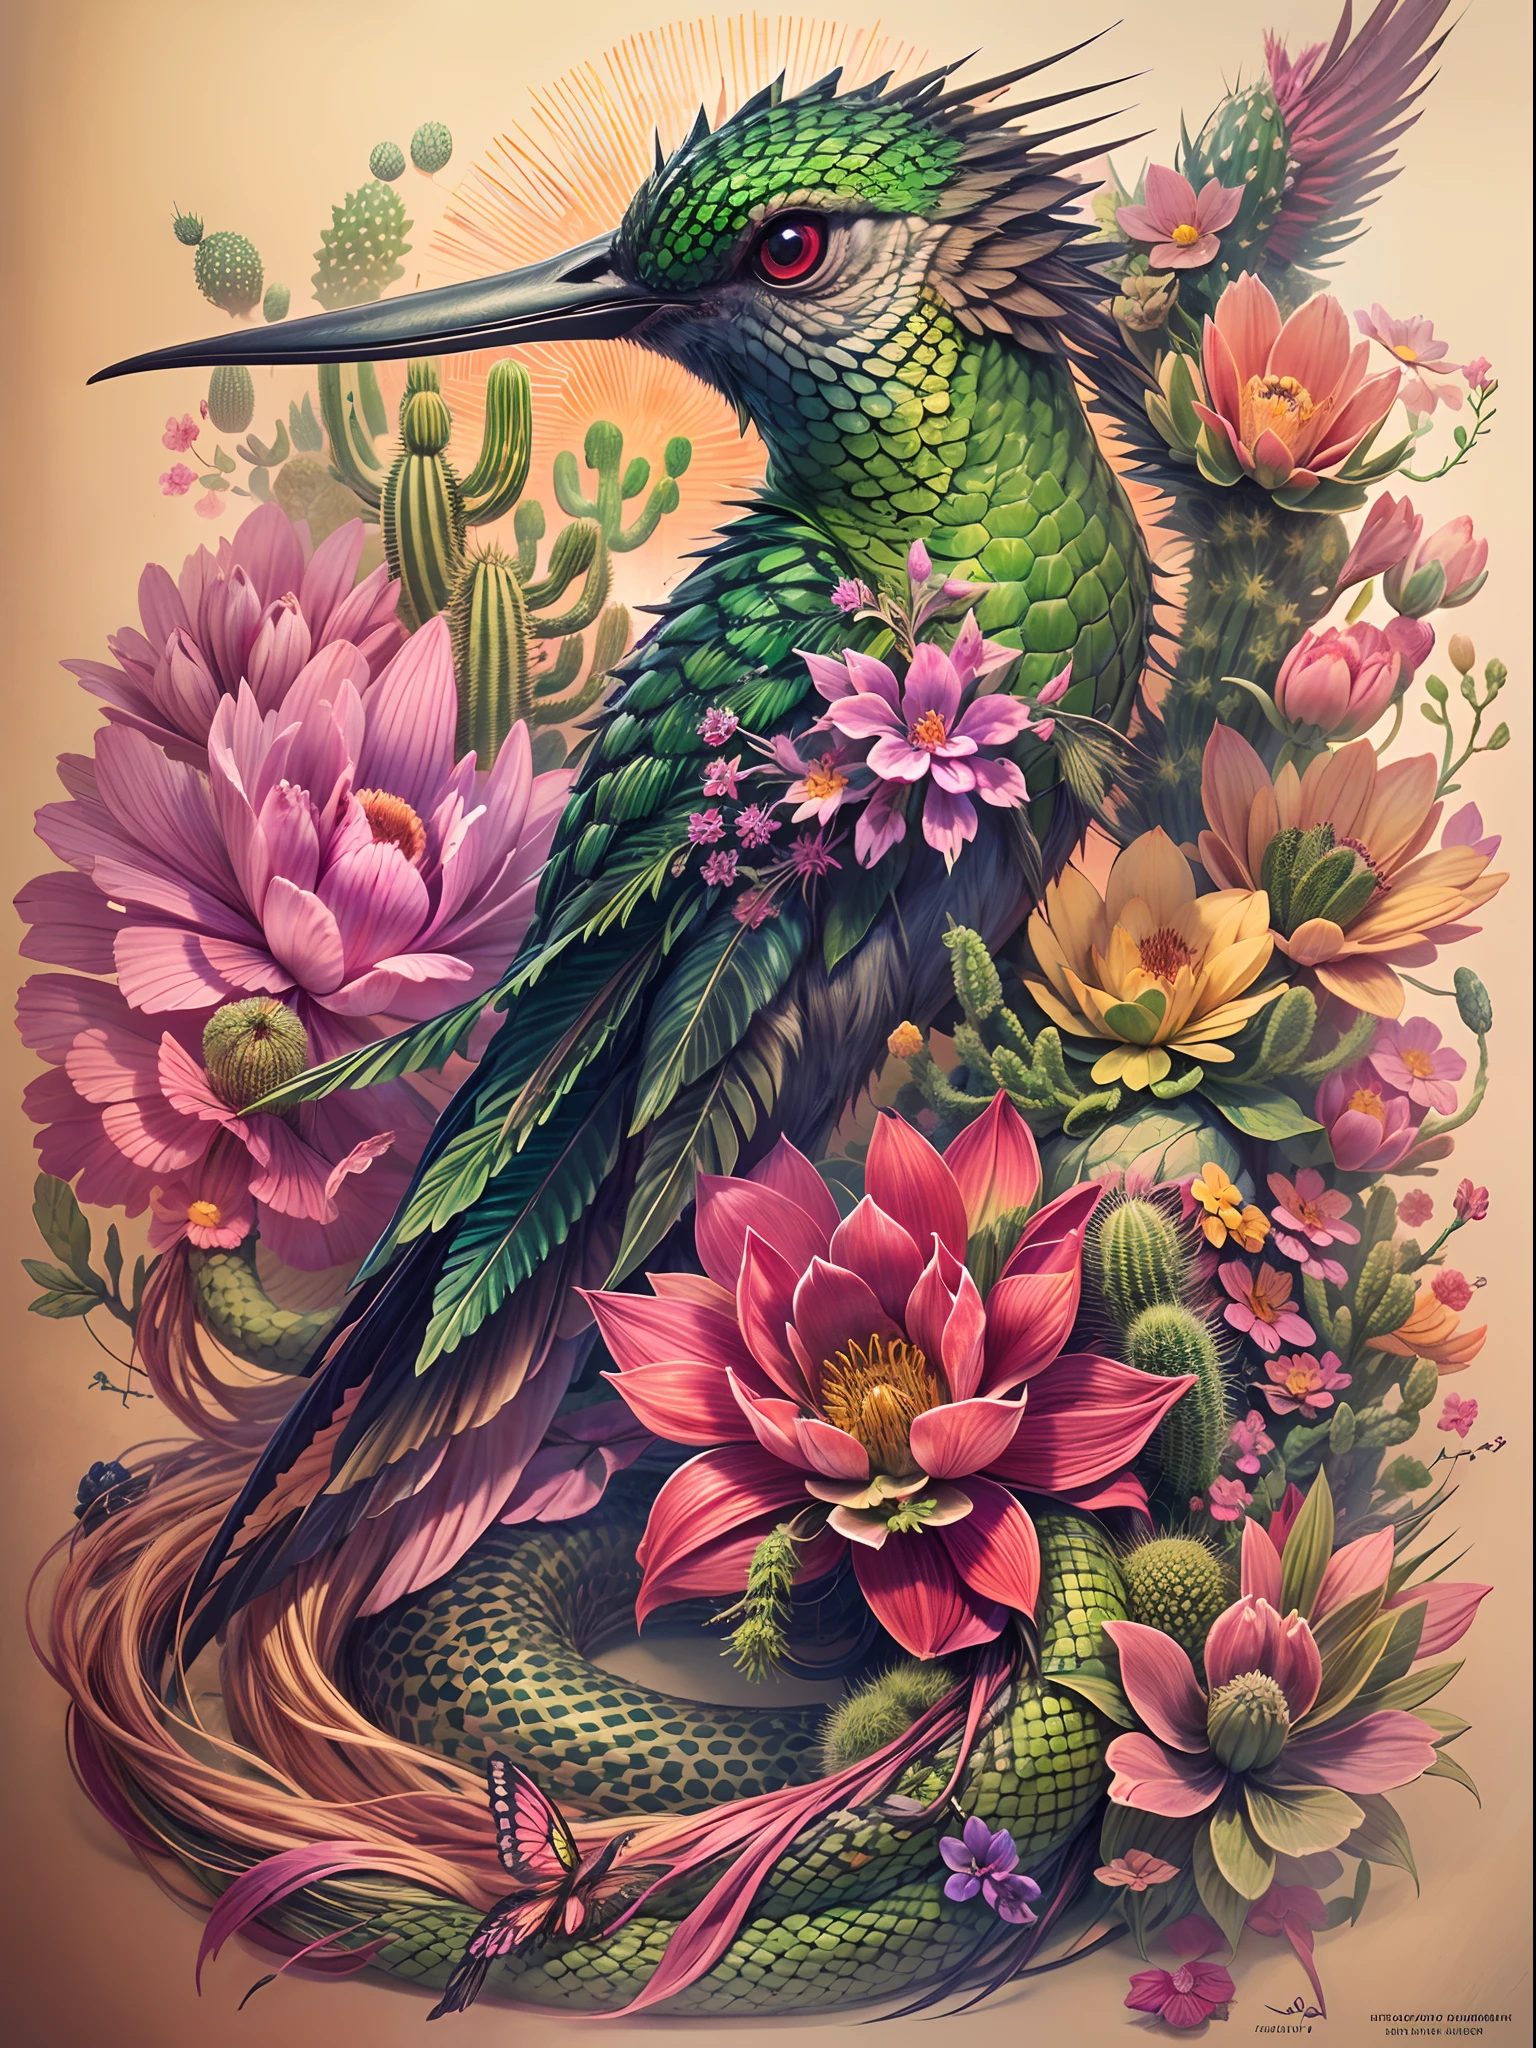 在这个纹身设计中, 创造一种融合蜂鸟特征的超现实生物, 一条蛇, 和一棵仙人掌, 带有复杂的细节，例如彩虹色的羽毛, 带有刺的鲜绿色鳞片, 以及从这种生物多刺的身体上长出的精致花朵, 背景为黑暗而忧郁，带有一丝落日的色调, 创造令人着迷和难忘的形象.